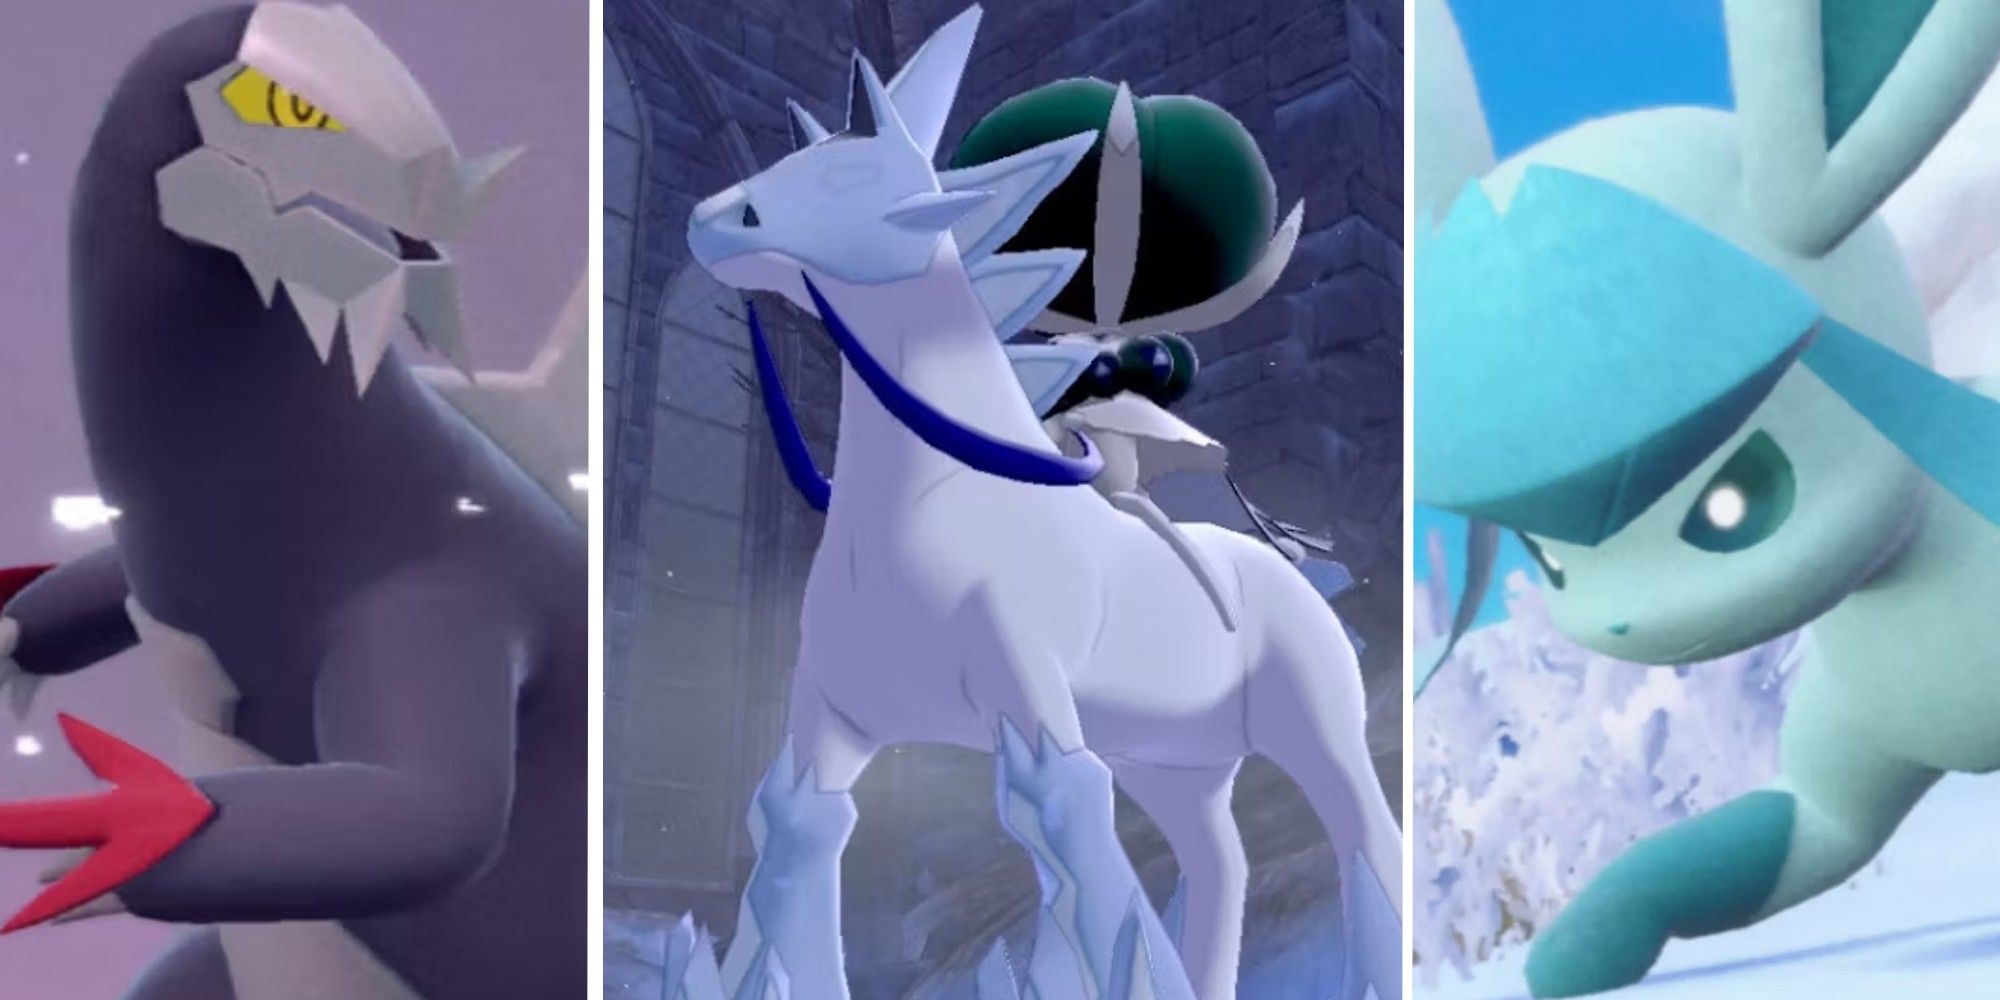 The best ice Pokémon in Pokémon Go 2023